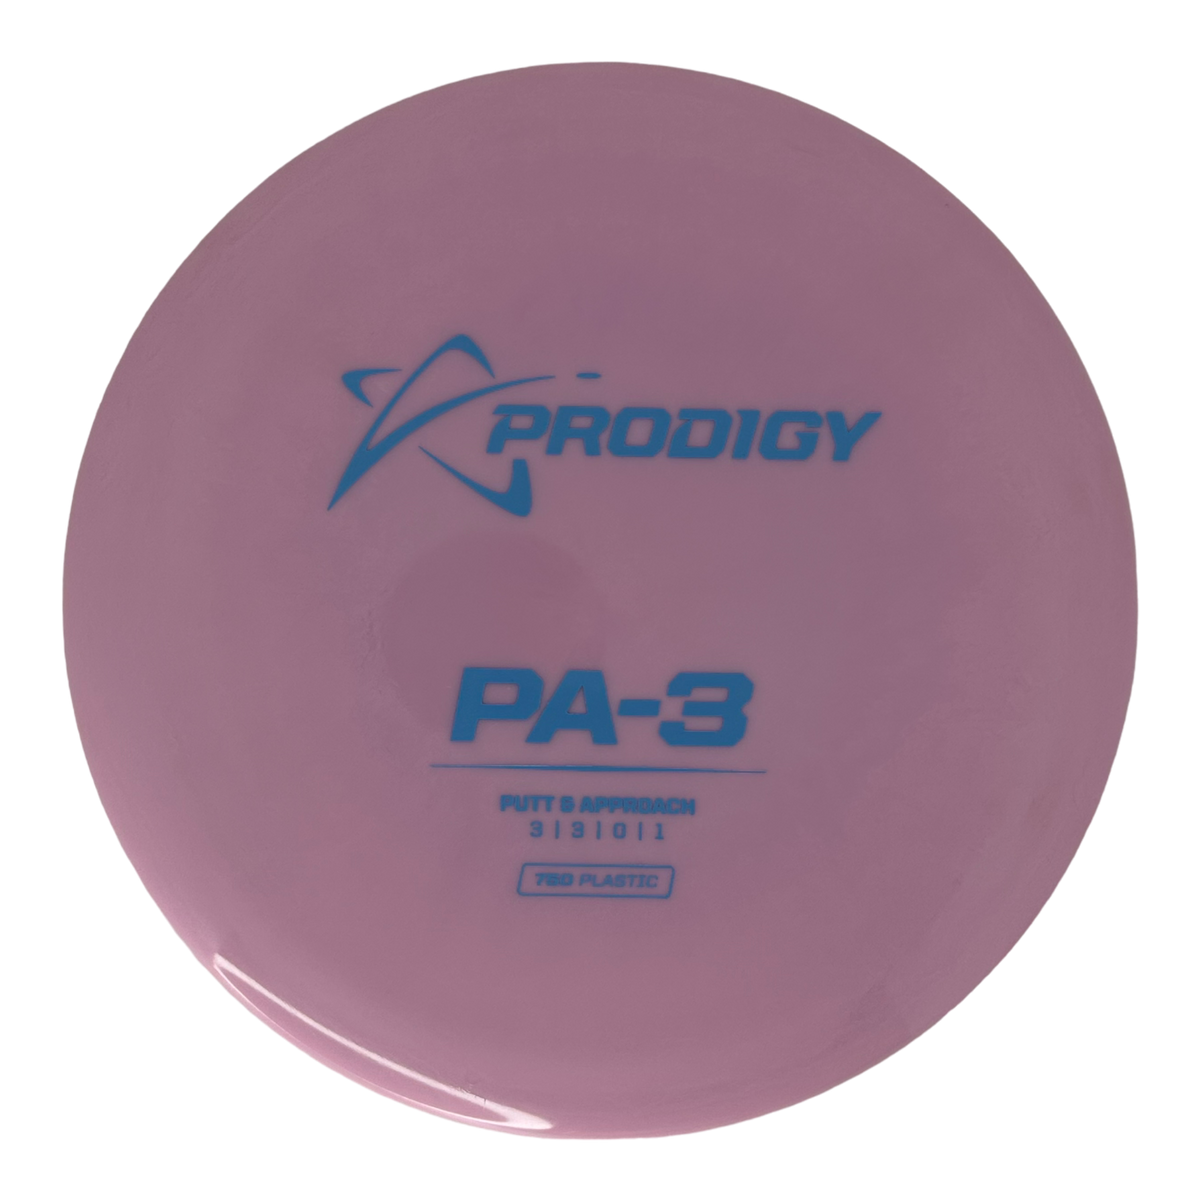 Prodigy 750 Pa3